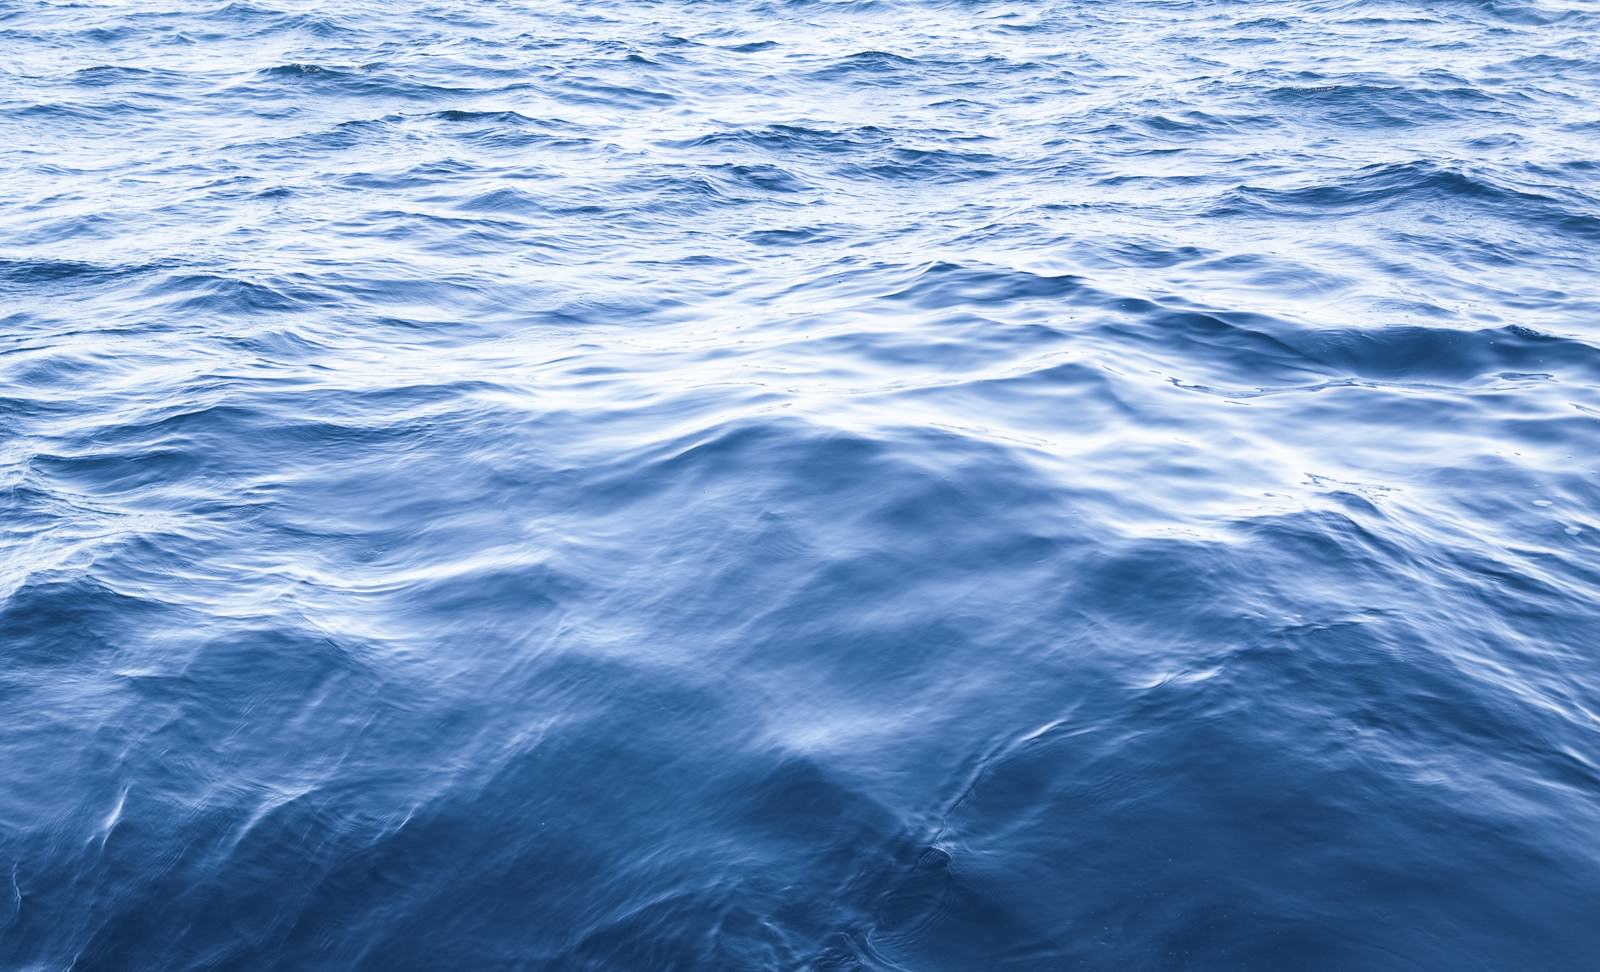 「静かな沖の海」の写真